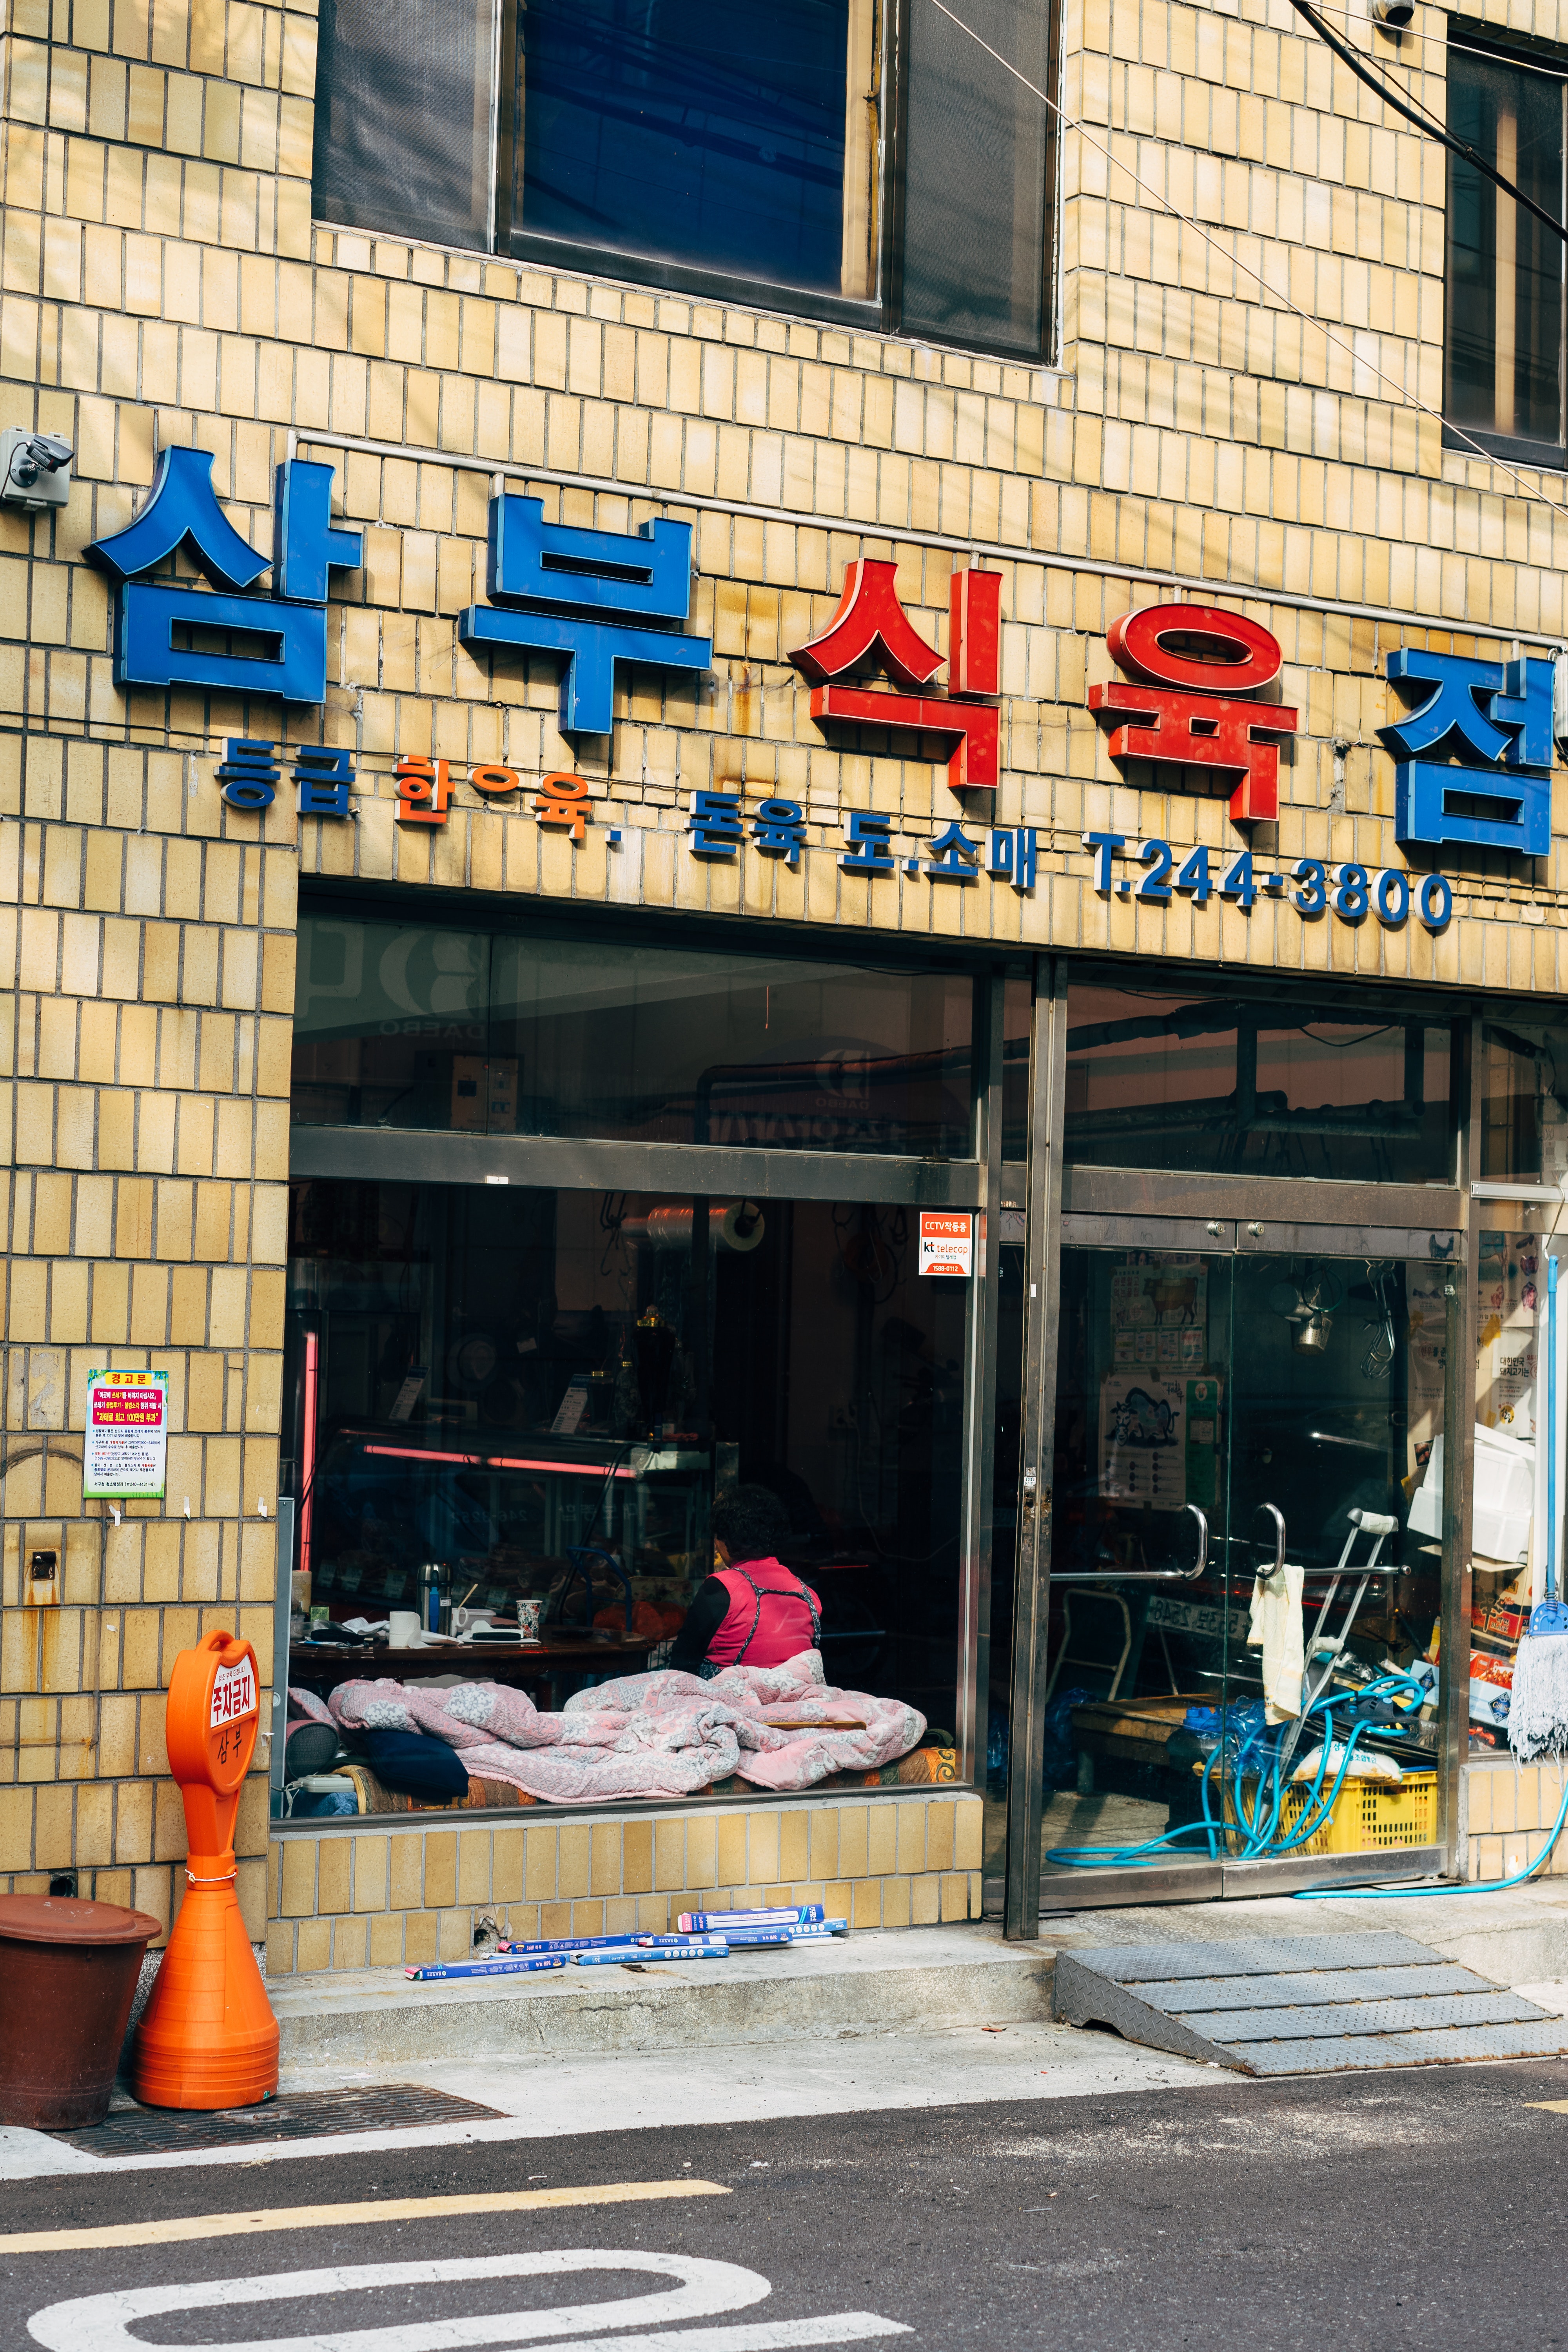 Zdjęcie przedstawia ścianę domu mieszkalnego (ściana z cegiełek w kolorze piasku pustyni), w którym na parterze jest bar lub restauracja. Nad wejściem wisi 5 znaków w języku koreańskim. Znaki środkowe są czerwone, pozostałe niebieskie. Witryna sklepowa i drzwi wejściowe są duże i przestronne.